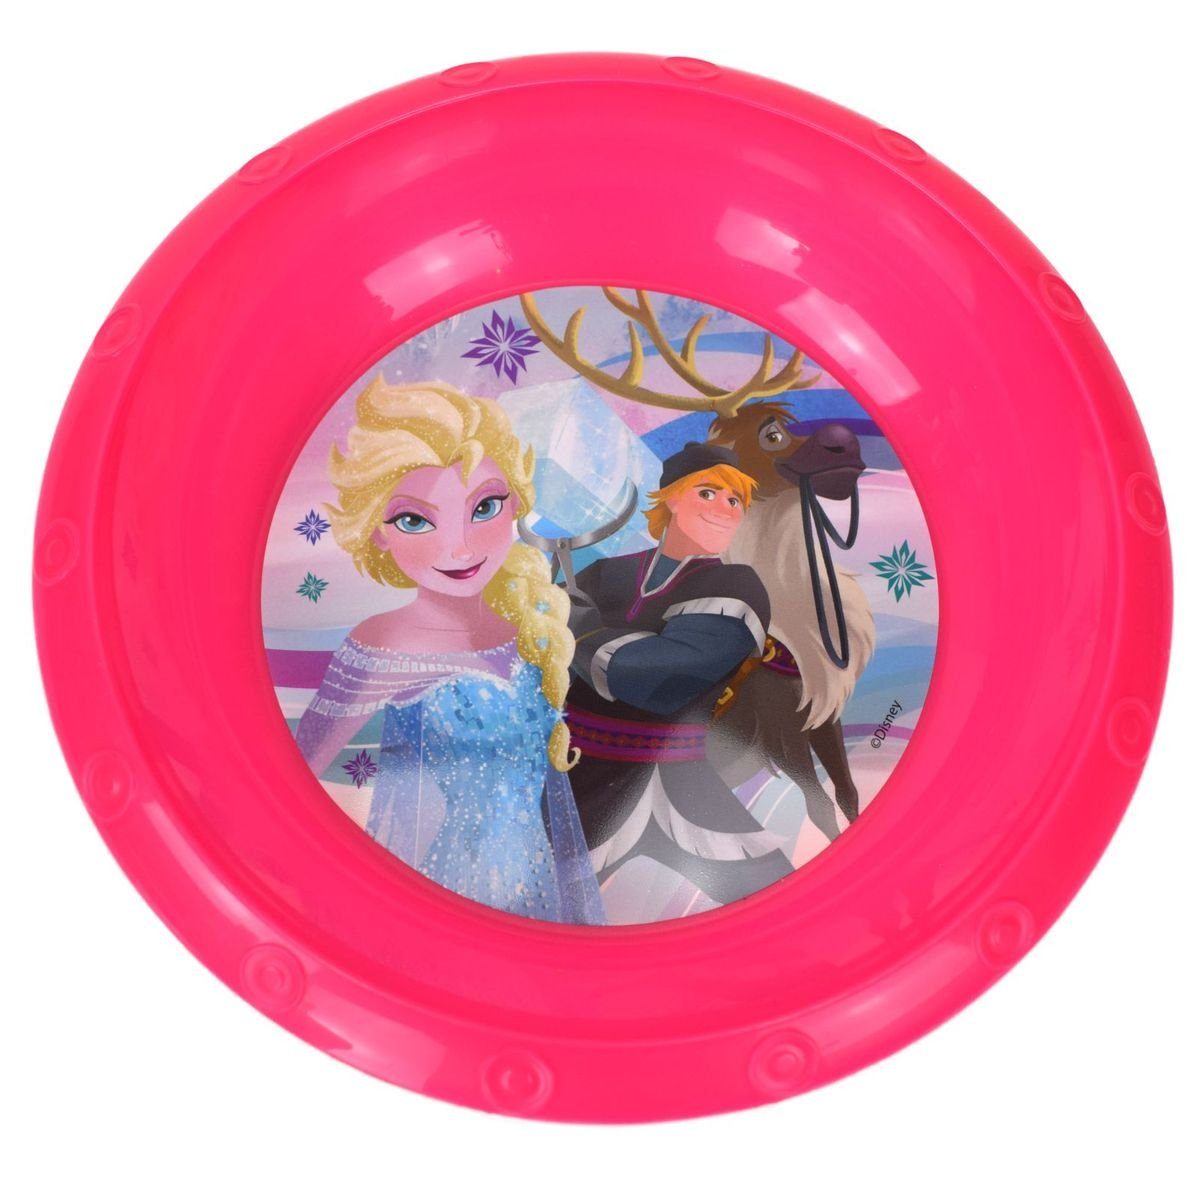 Stor Geschirr-Set Plastikschüssel Ø17 für Kinder Disney Frozen oder Peppa Wutz, Kunststoff Pink